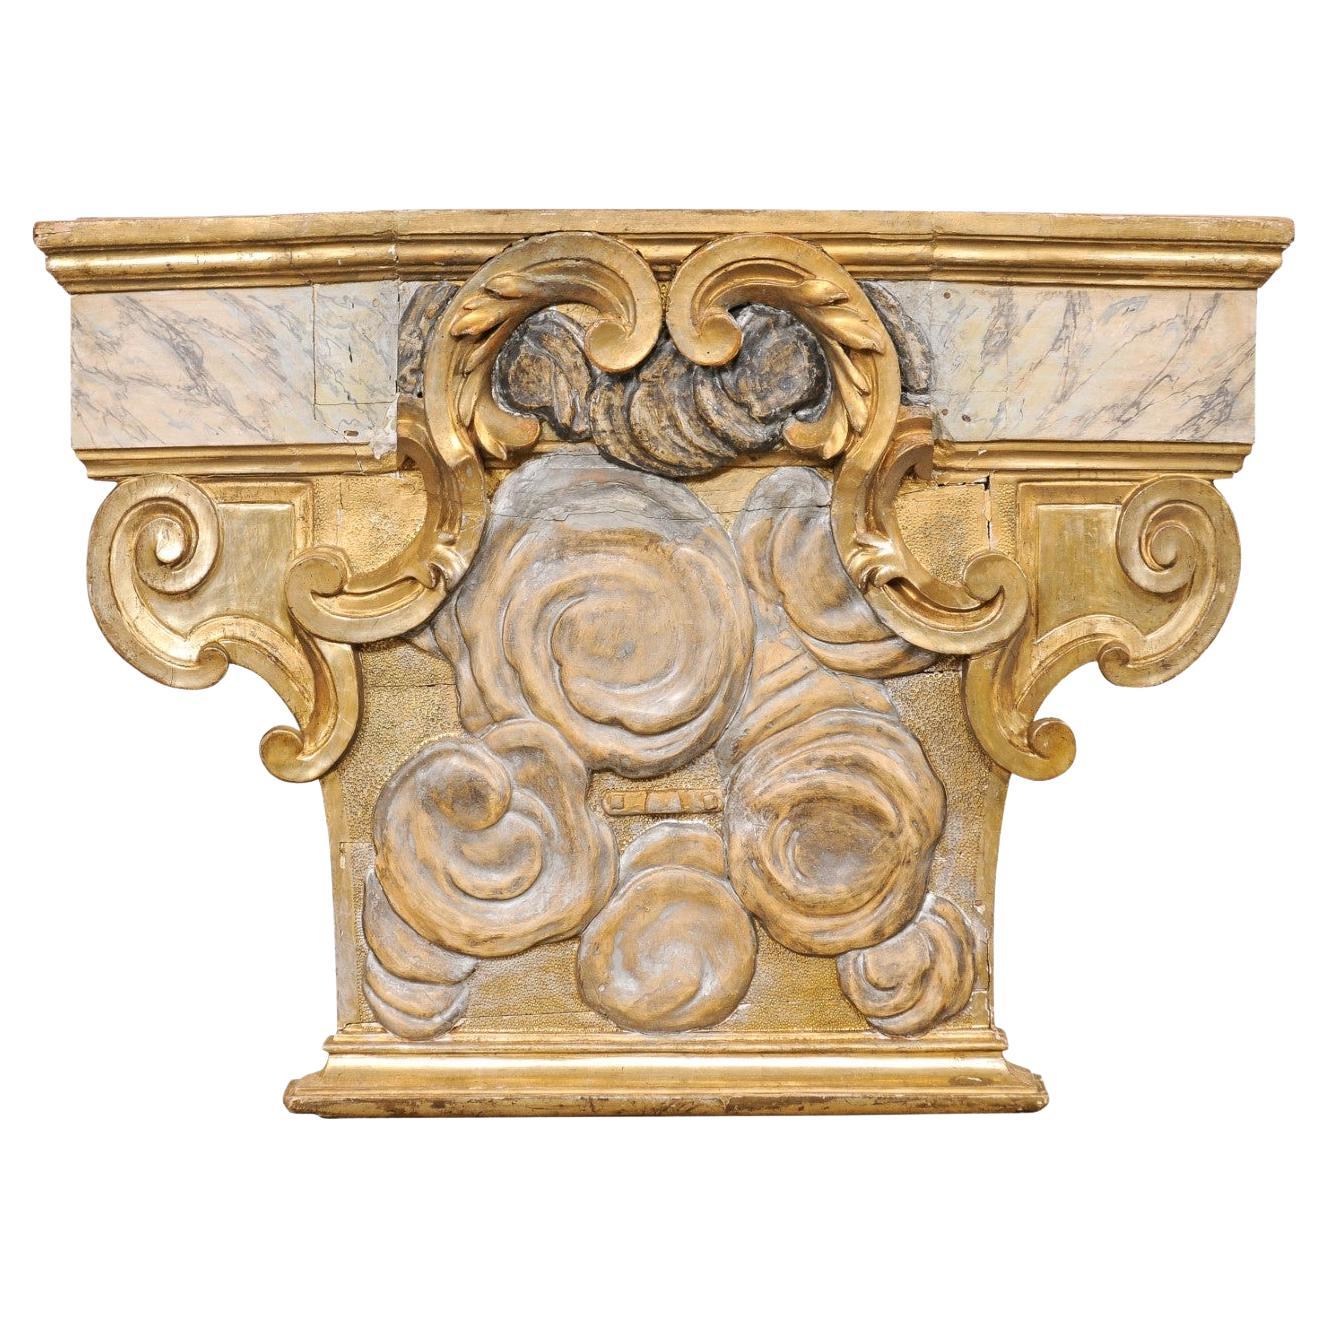 Plaque architecturale italienne du 18e siècle, sculptée, peinte en faux marbre et dorée